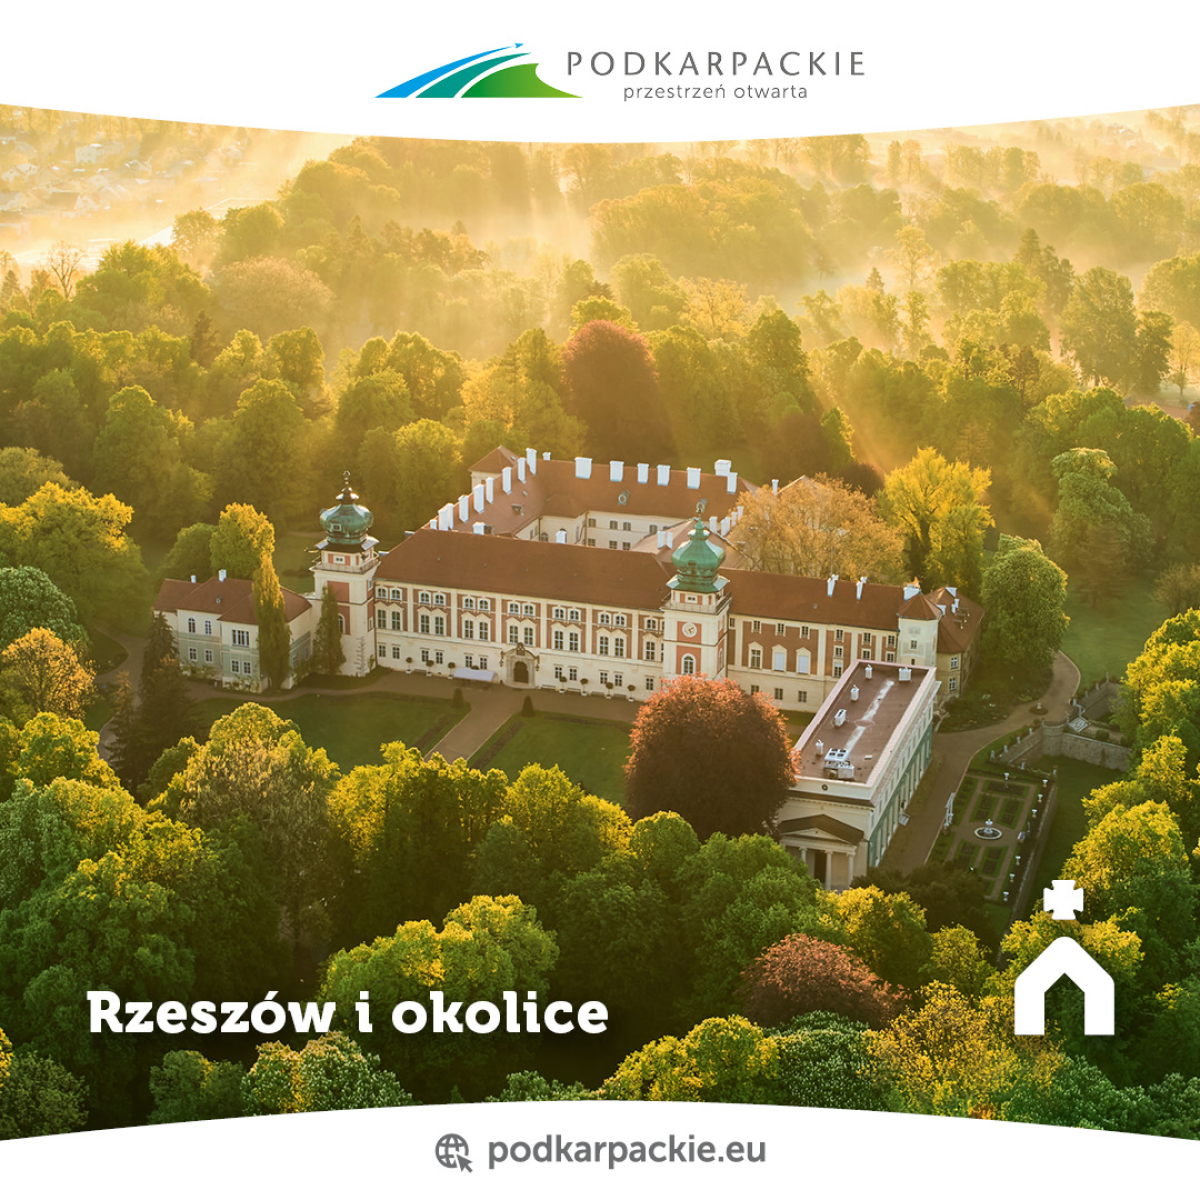 Rzeszów i okolice - Województwo Podkarpackie.